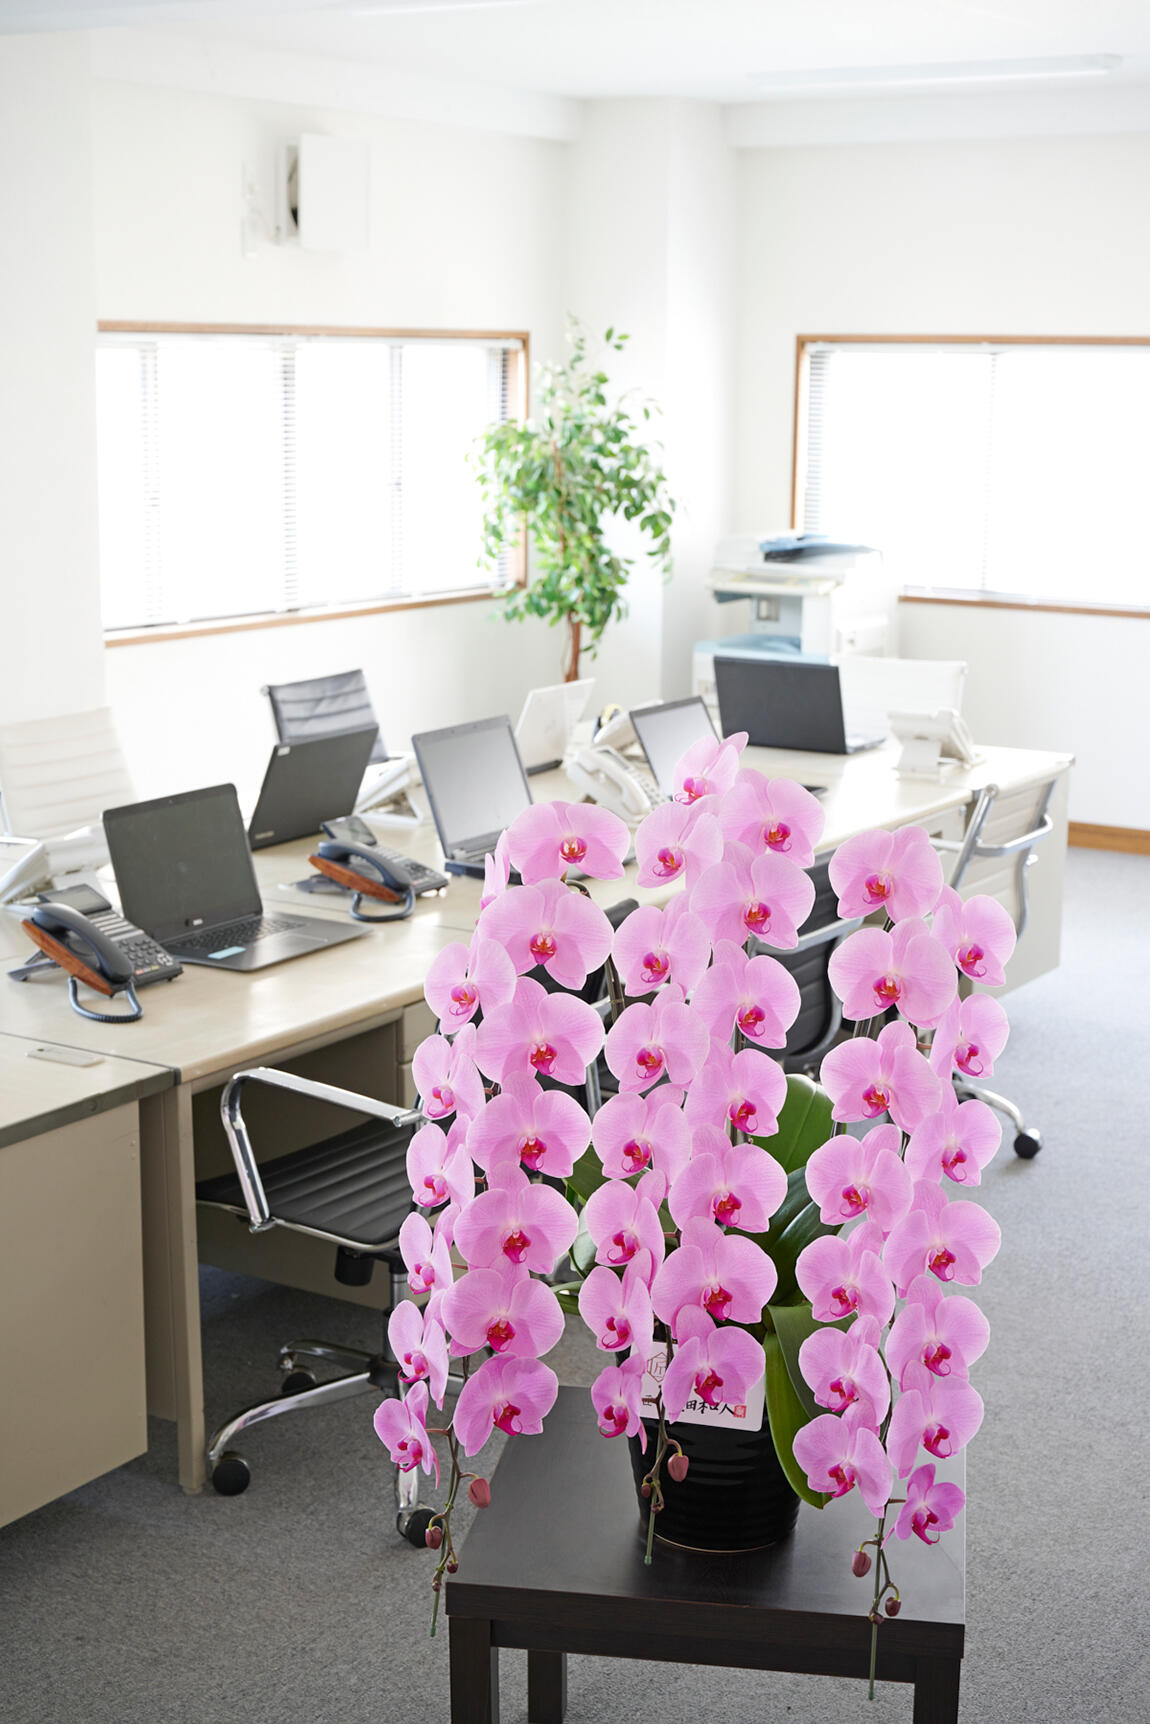 <p>開業祝い、開店祝い、開院祝いなど、ビジネス上での贈答用お祝い花として人気のお花が胡蝶蘭です。</p>